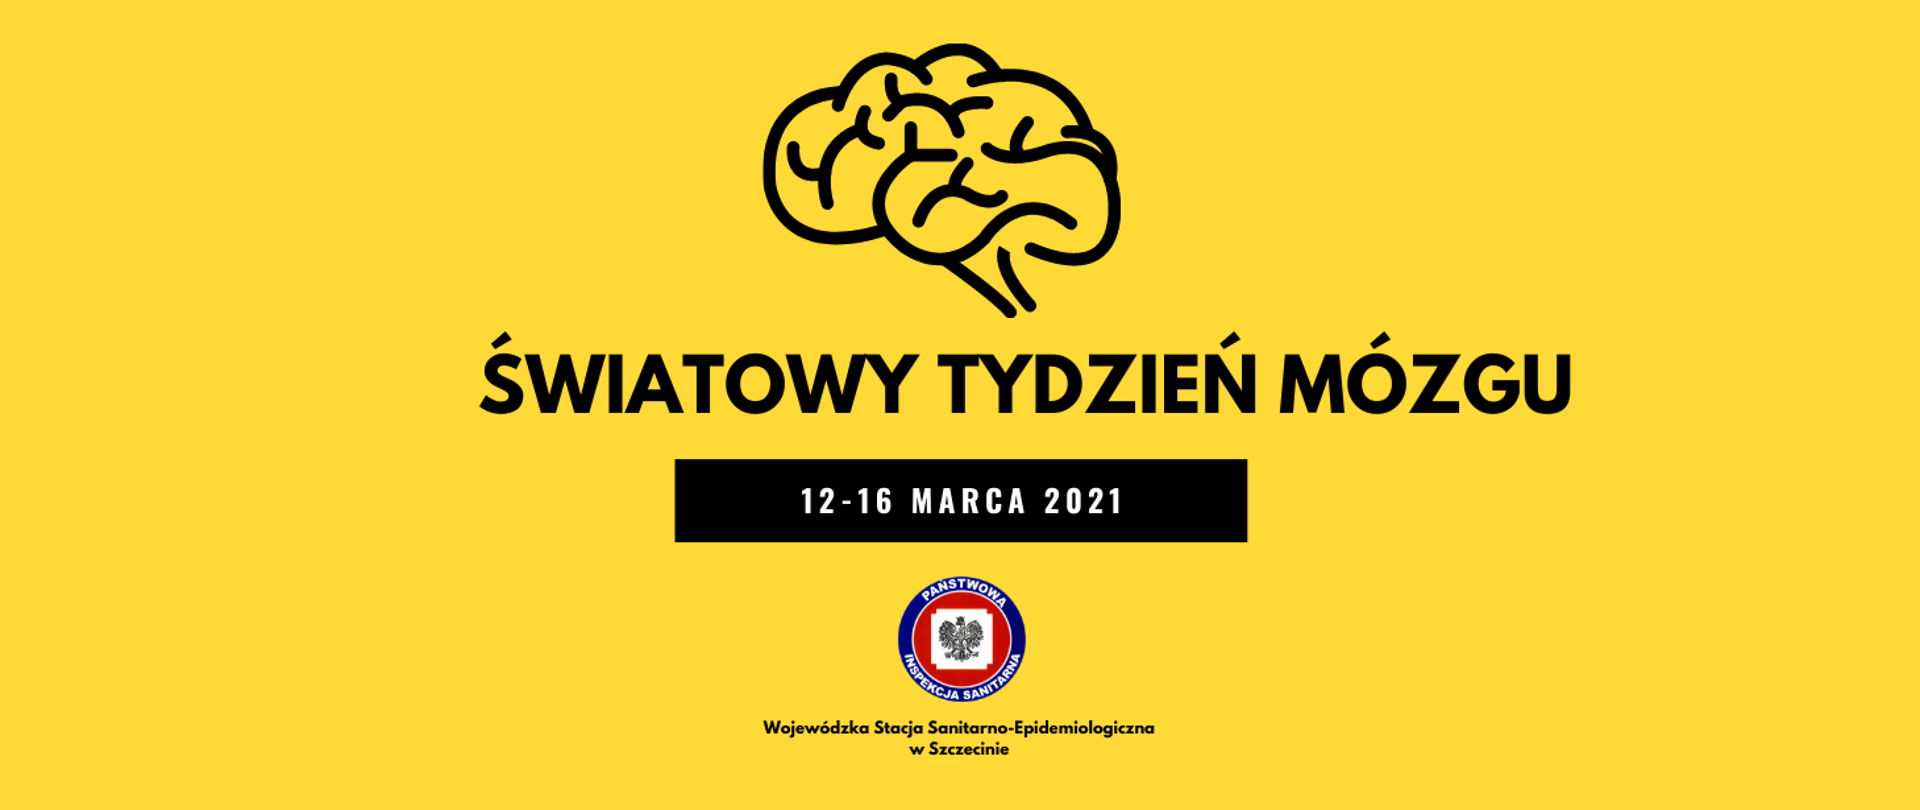 Obraz przedstawia szkic mózgu na żółtym tle. Pod szkicem umieszony jest czarny napis Światowy Tydzień Mózgu. Pod napisem znajduje się wypełniona czarnym tłem prostokątna ramka, na którym widnieje napis 12-16 marca 2021. Na samym dole widnieje logo Państwowej Inspekcji Sanitarnej (Obramowanie w kolorze granatowym, na którym umieszczony jest napis Państwowa Inspekcja Sanitarna. W środku na czerwonym tle znajduje się biały kwadrat z wizerunkiem orła).